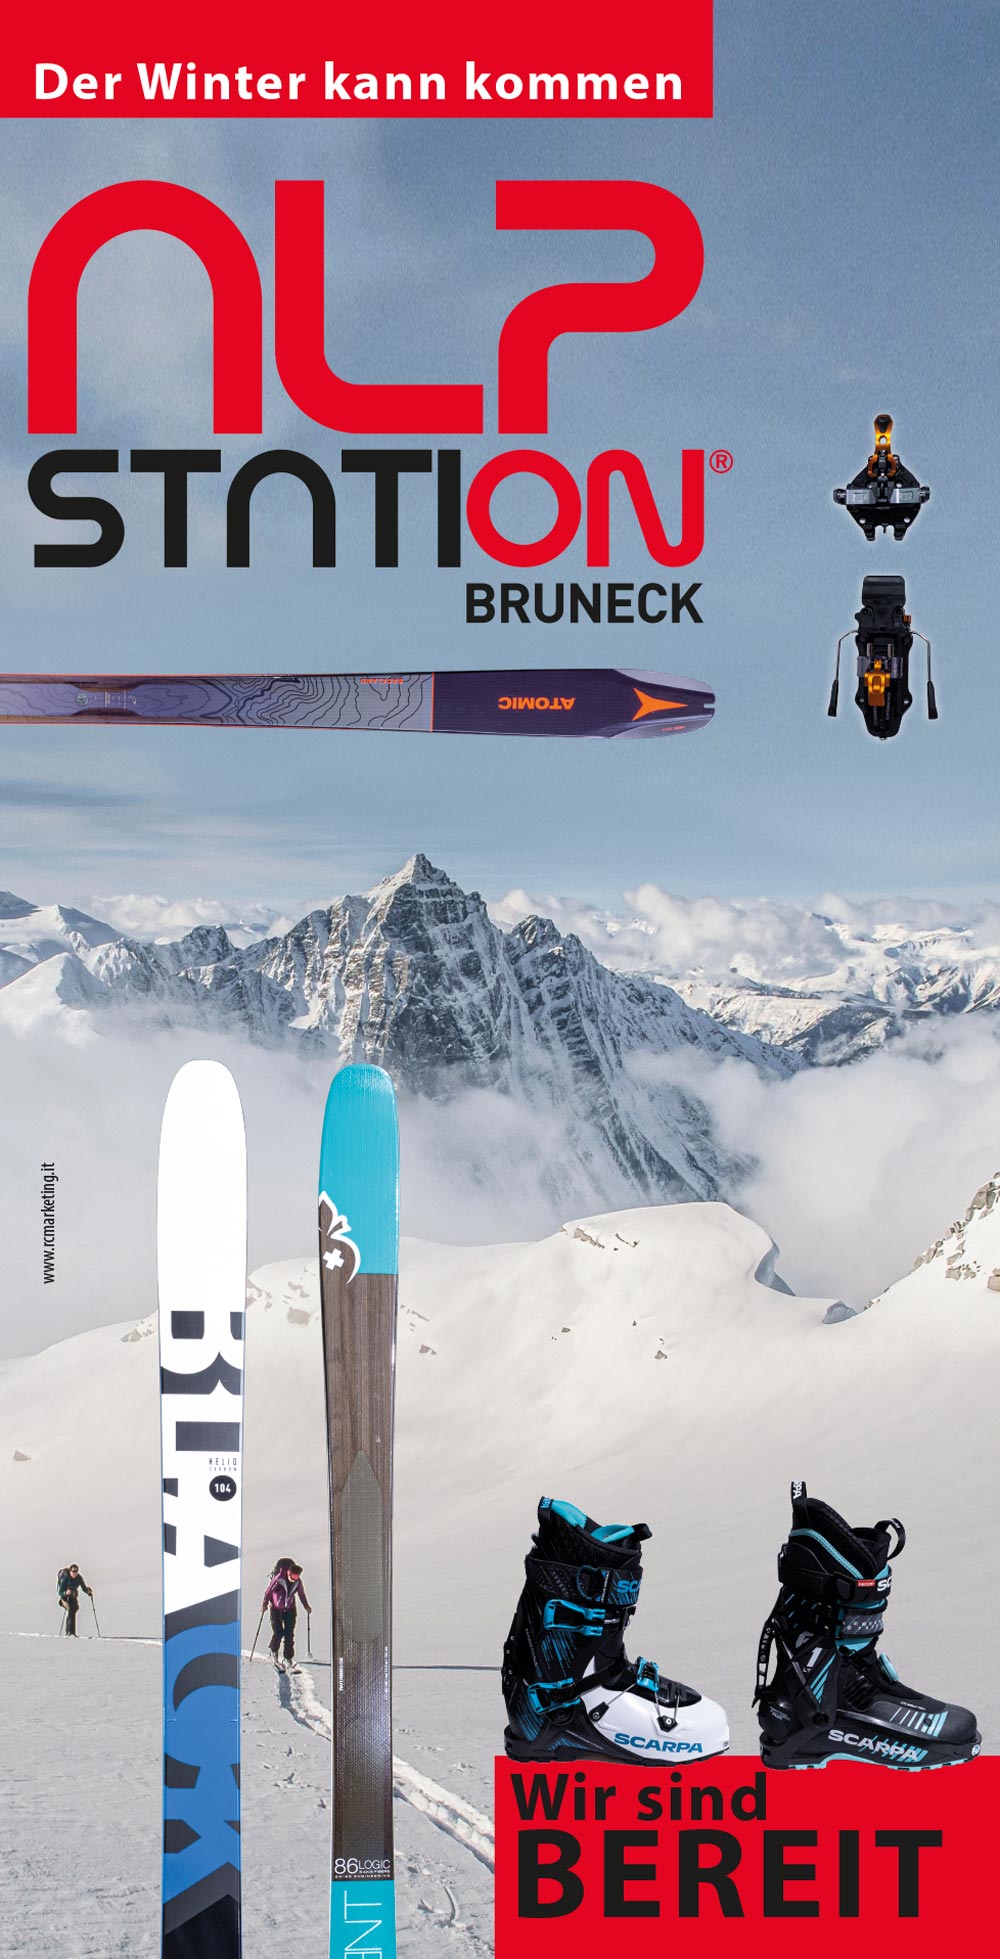 Grafische Gestaltung Plakat Alpstation Bruneck Südtirol, Ausverkauf Skitourensets